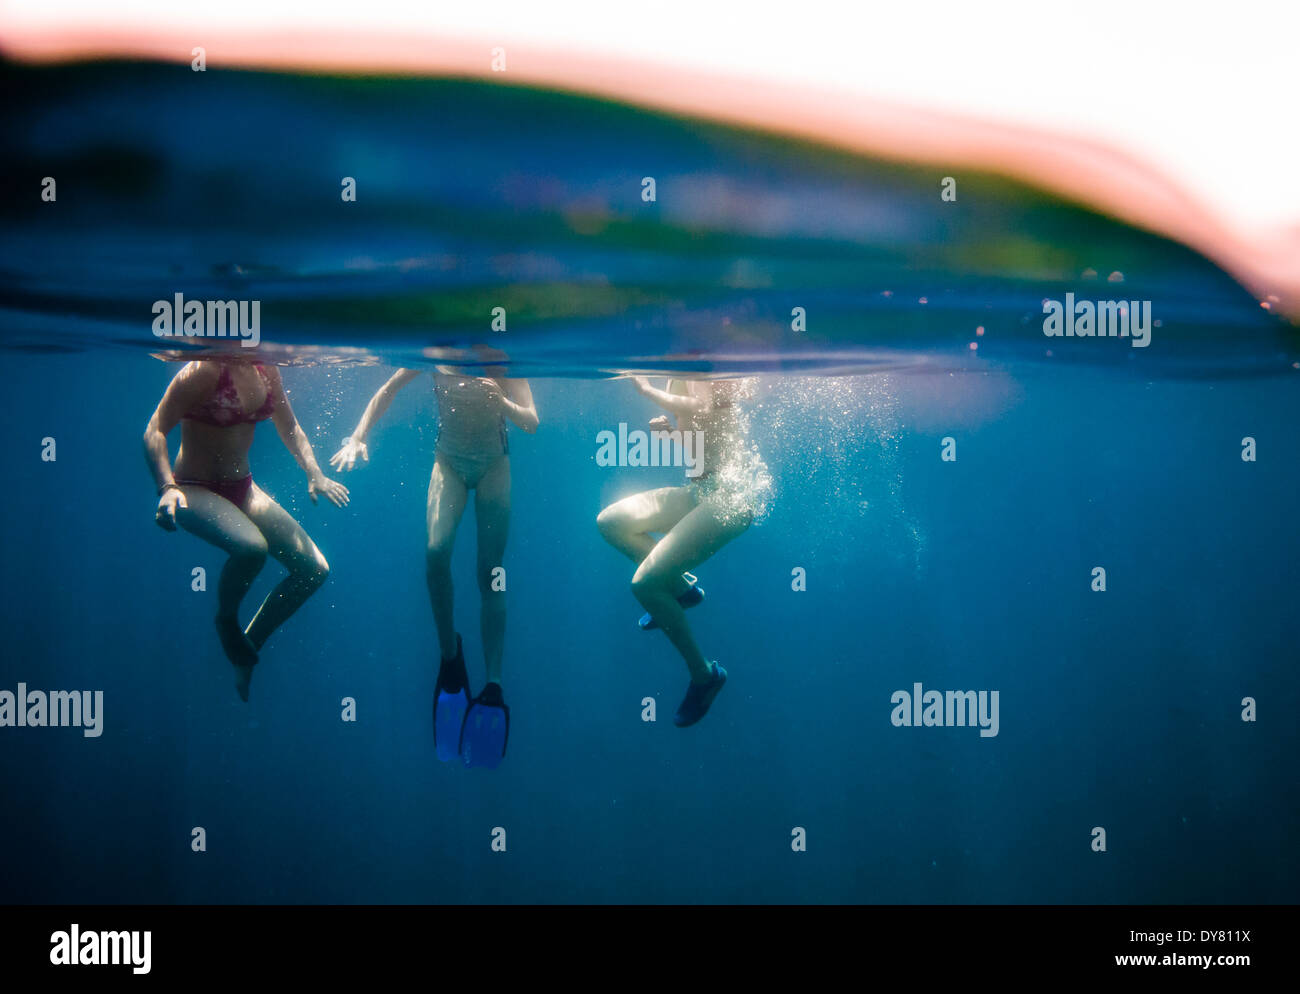 Croatia, Brac, Sumartin, Three girls under water Stock Photo